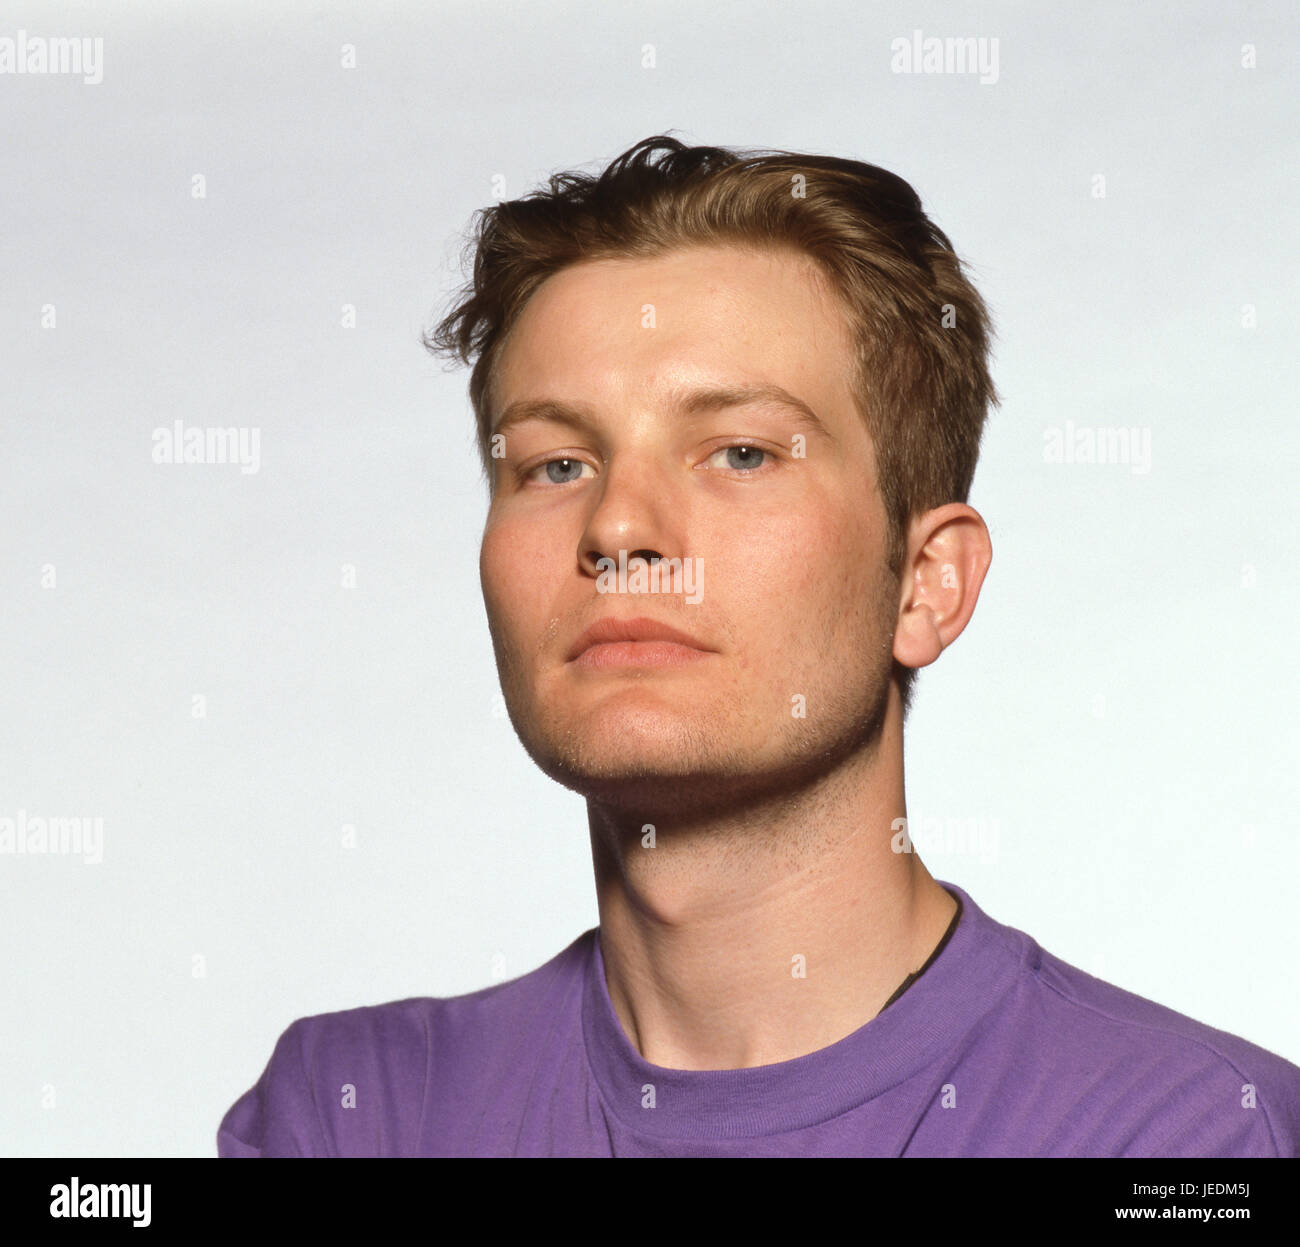 Retrato de un joven en una camiseta púrpura Foto de stock